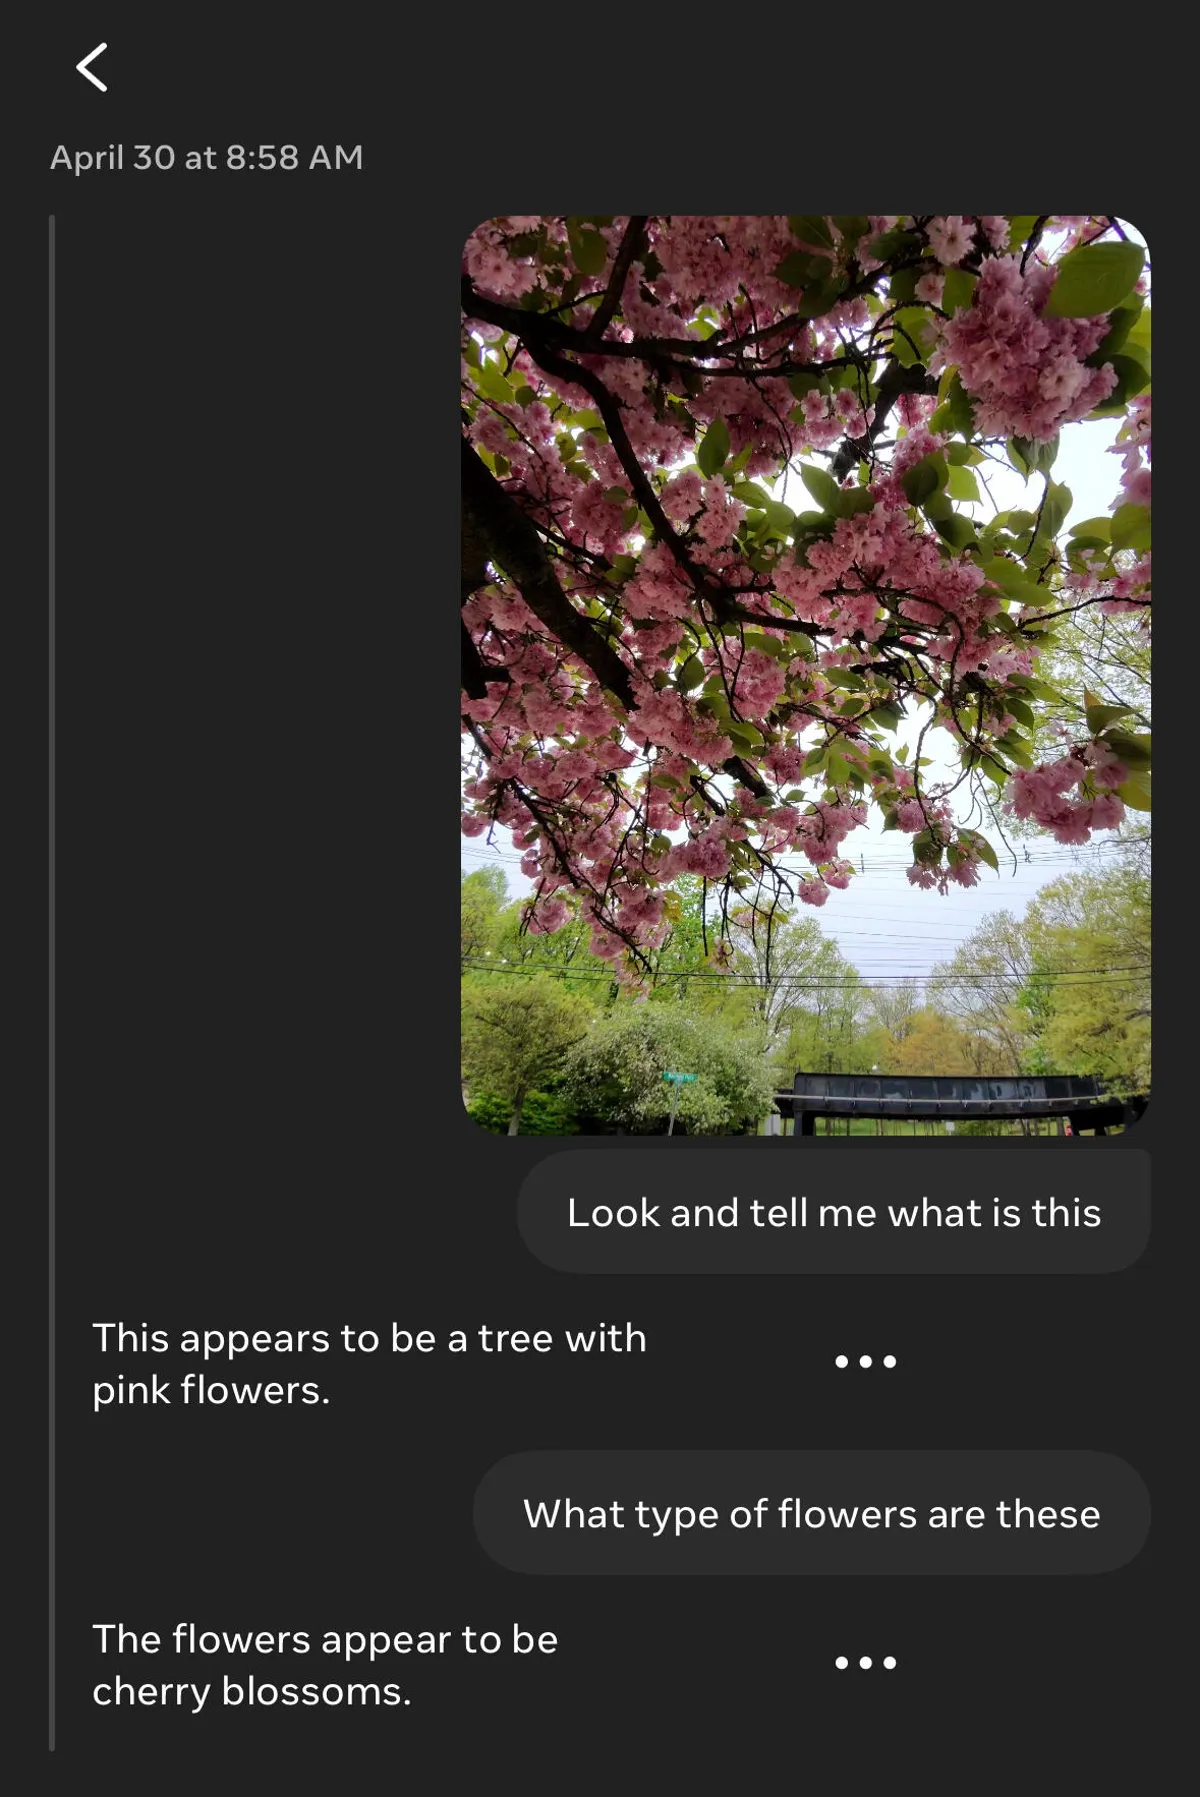 与人工智能对话的屏幕截图，内容涉及从包含的照片中识别花朵